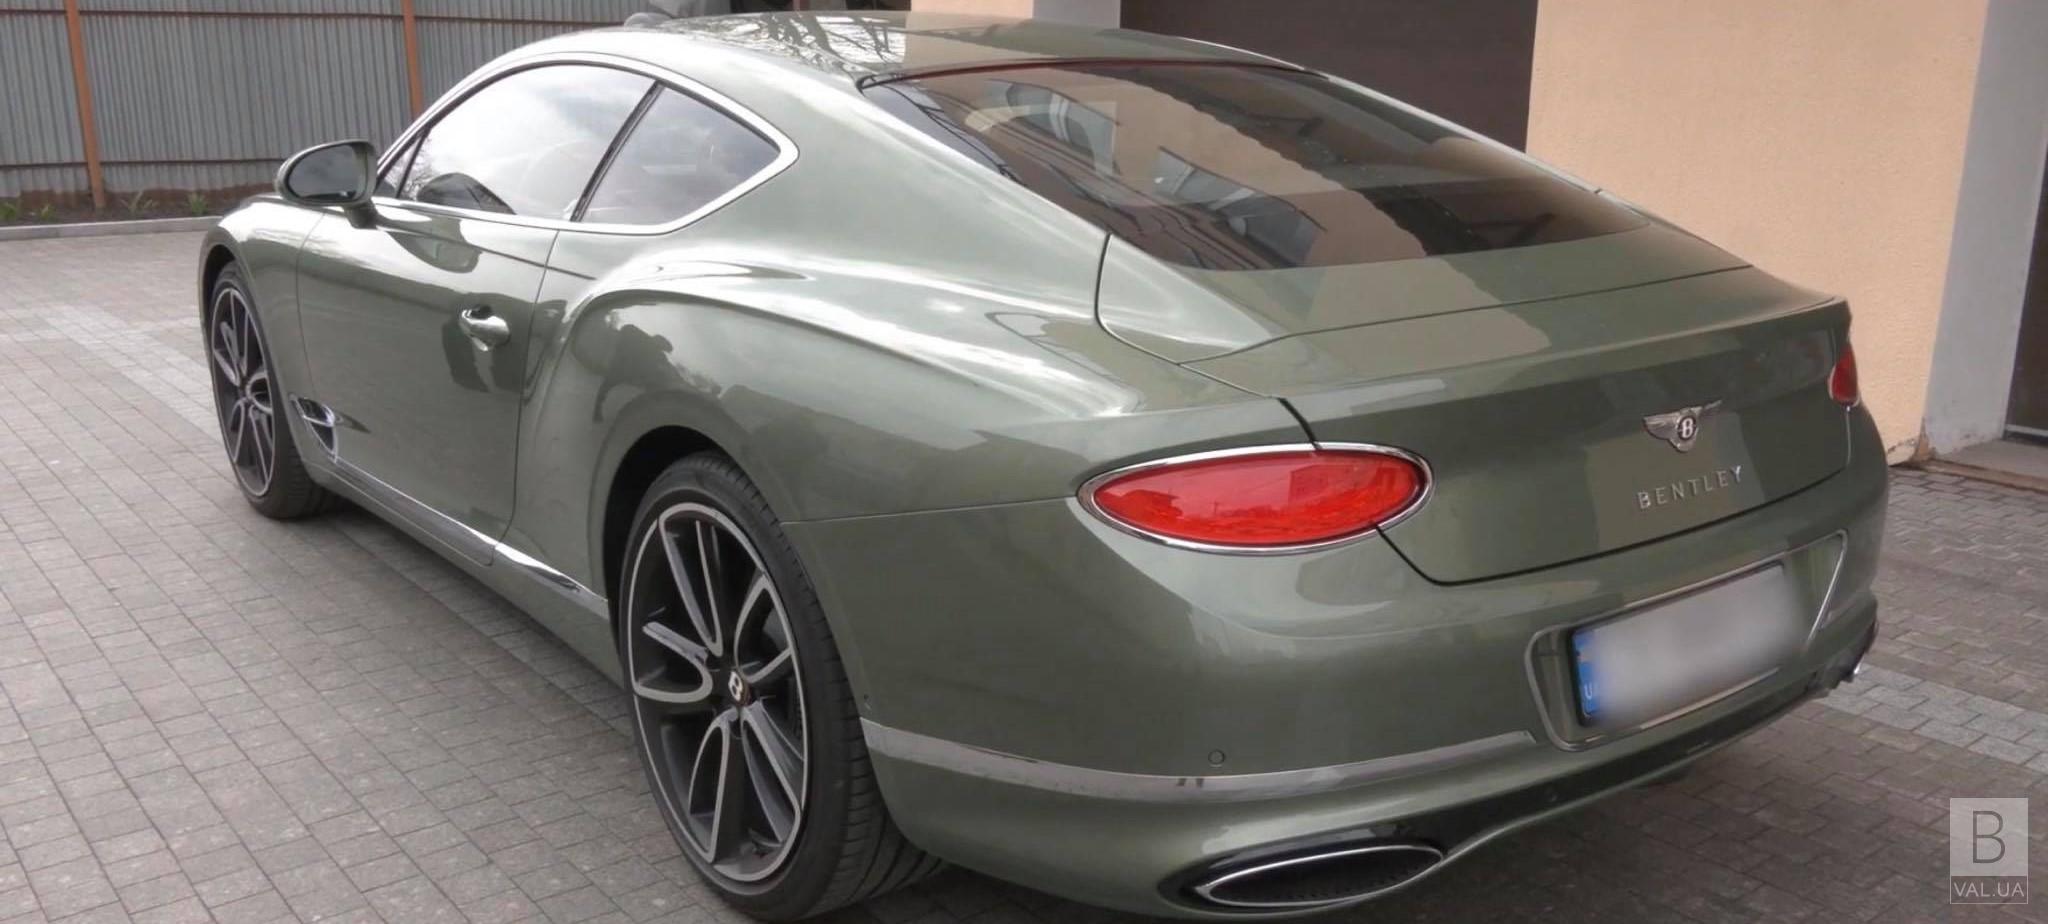 Валерій Куліч показав свій «Bentley» за 300 тисяч доларів ВІДЕО